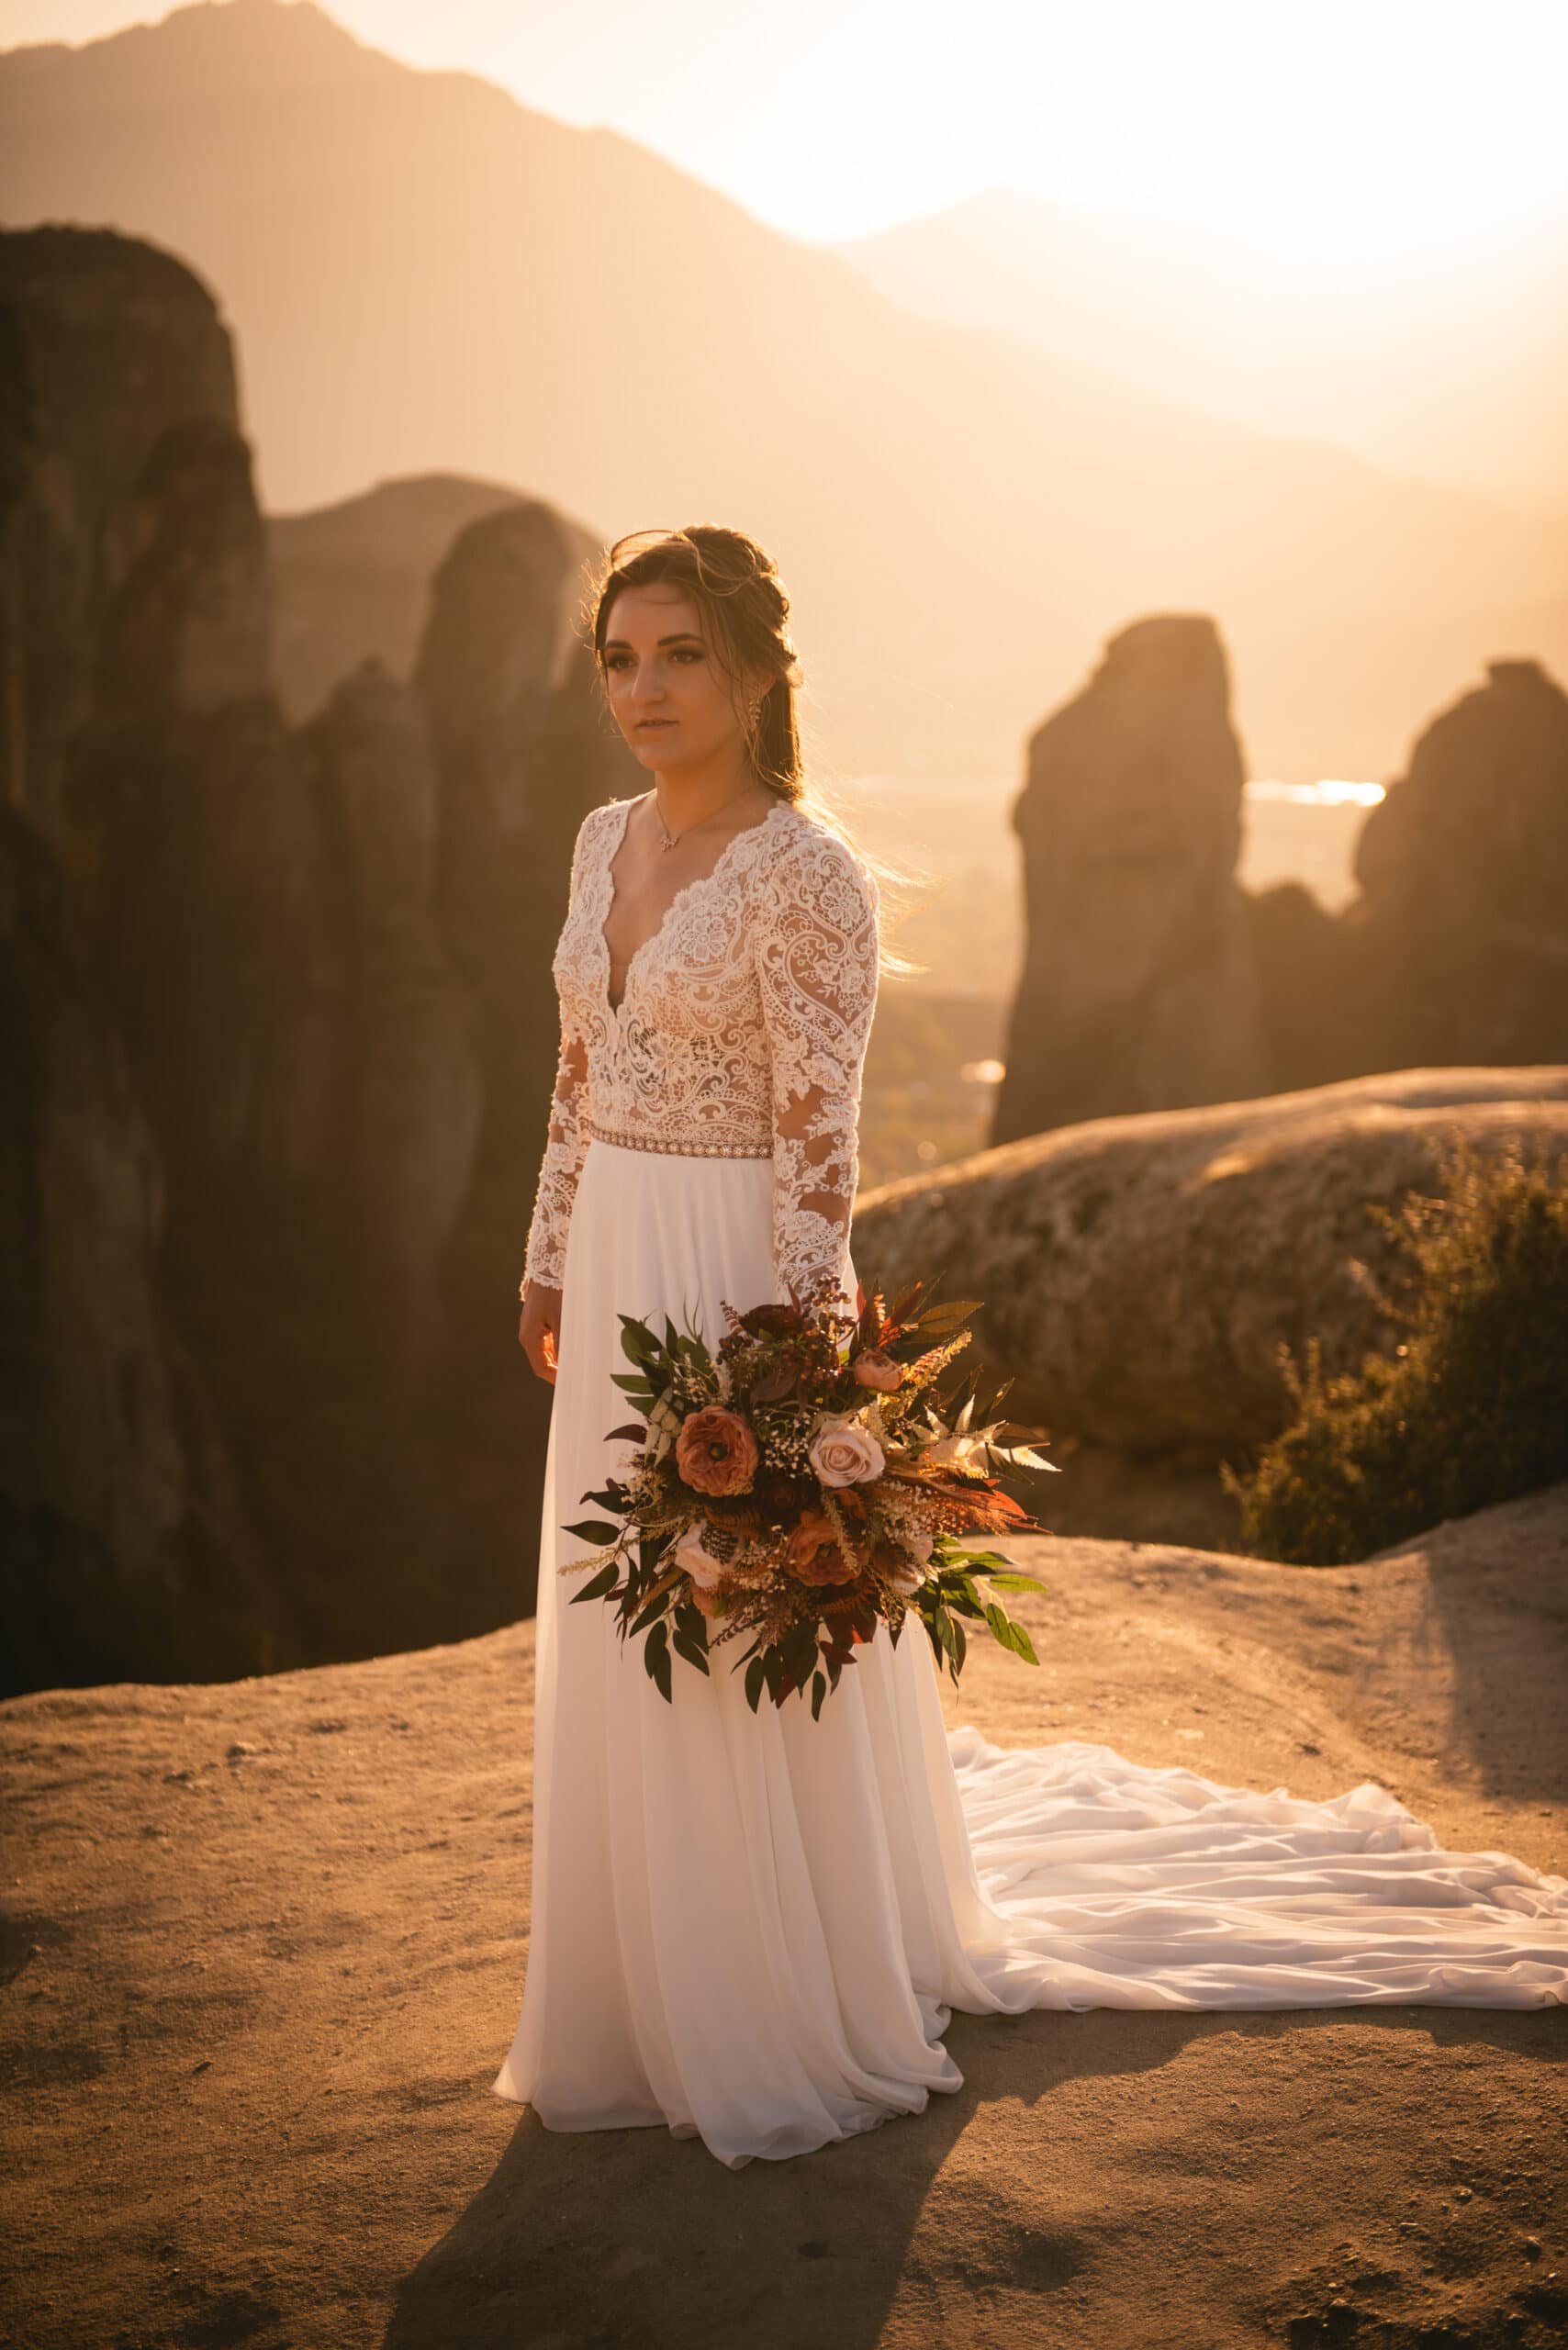 Bride holding her bouquet on her Meteora wedding elopement ceremony